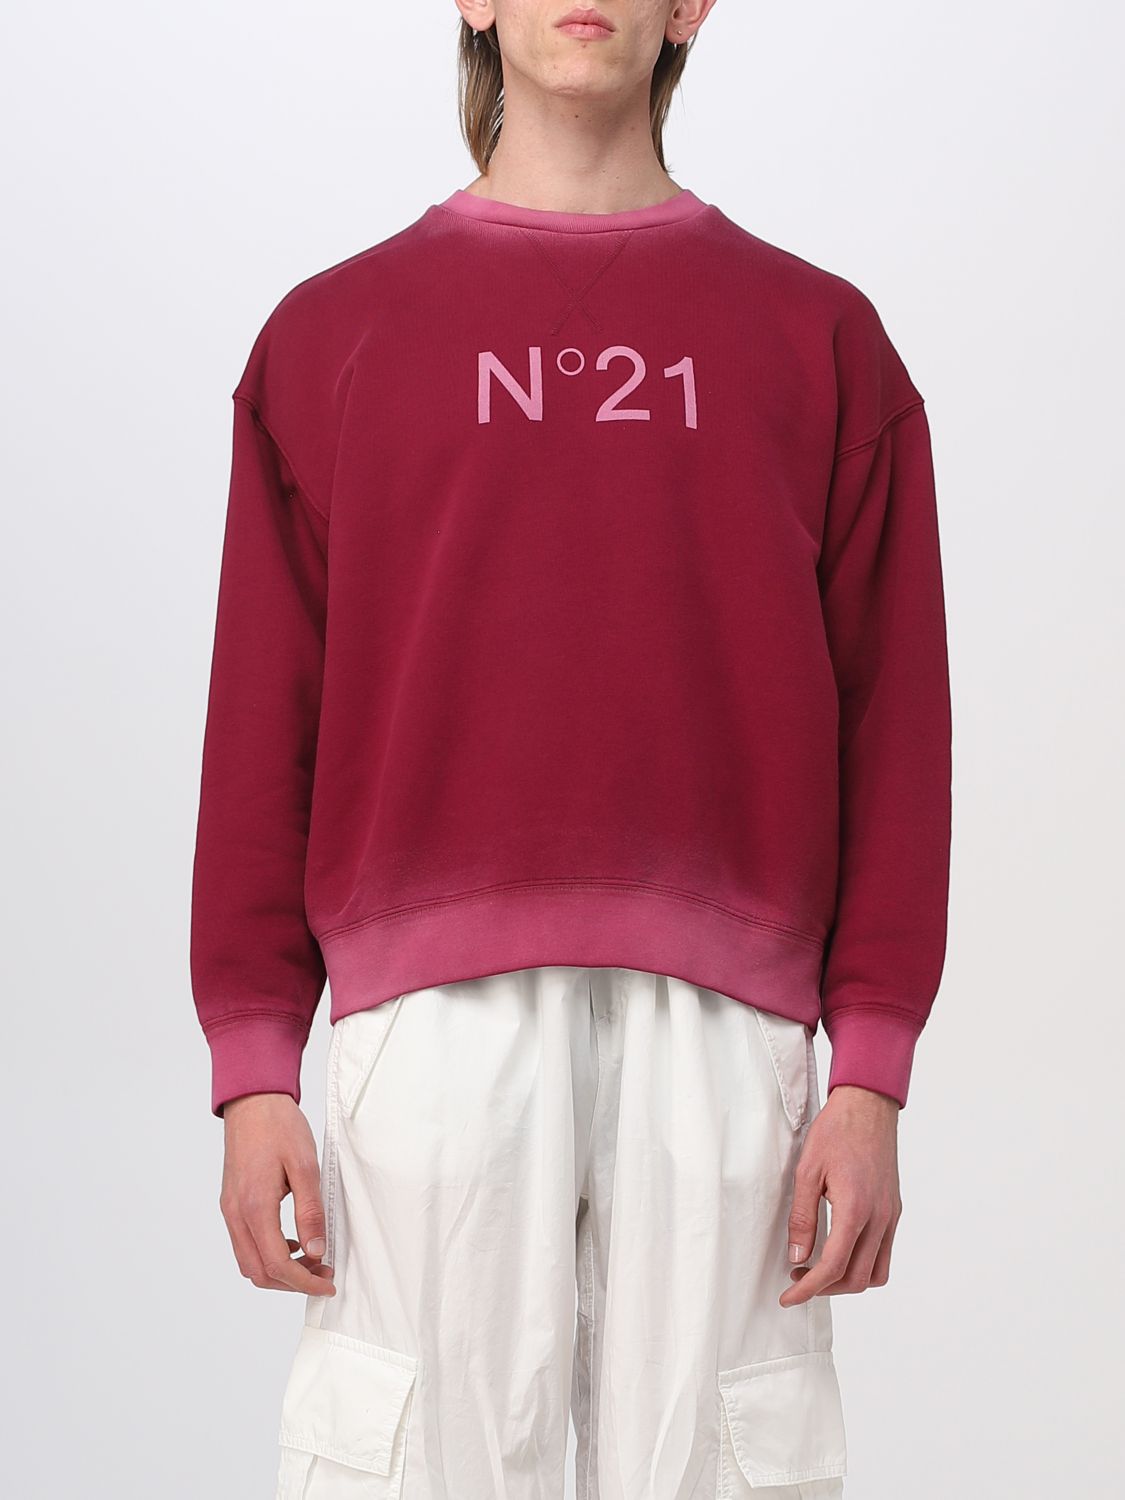 N°21 Sweatshirt N° 21 Men Colour Black Cherry